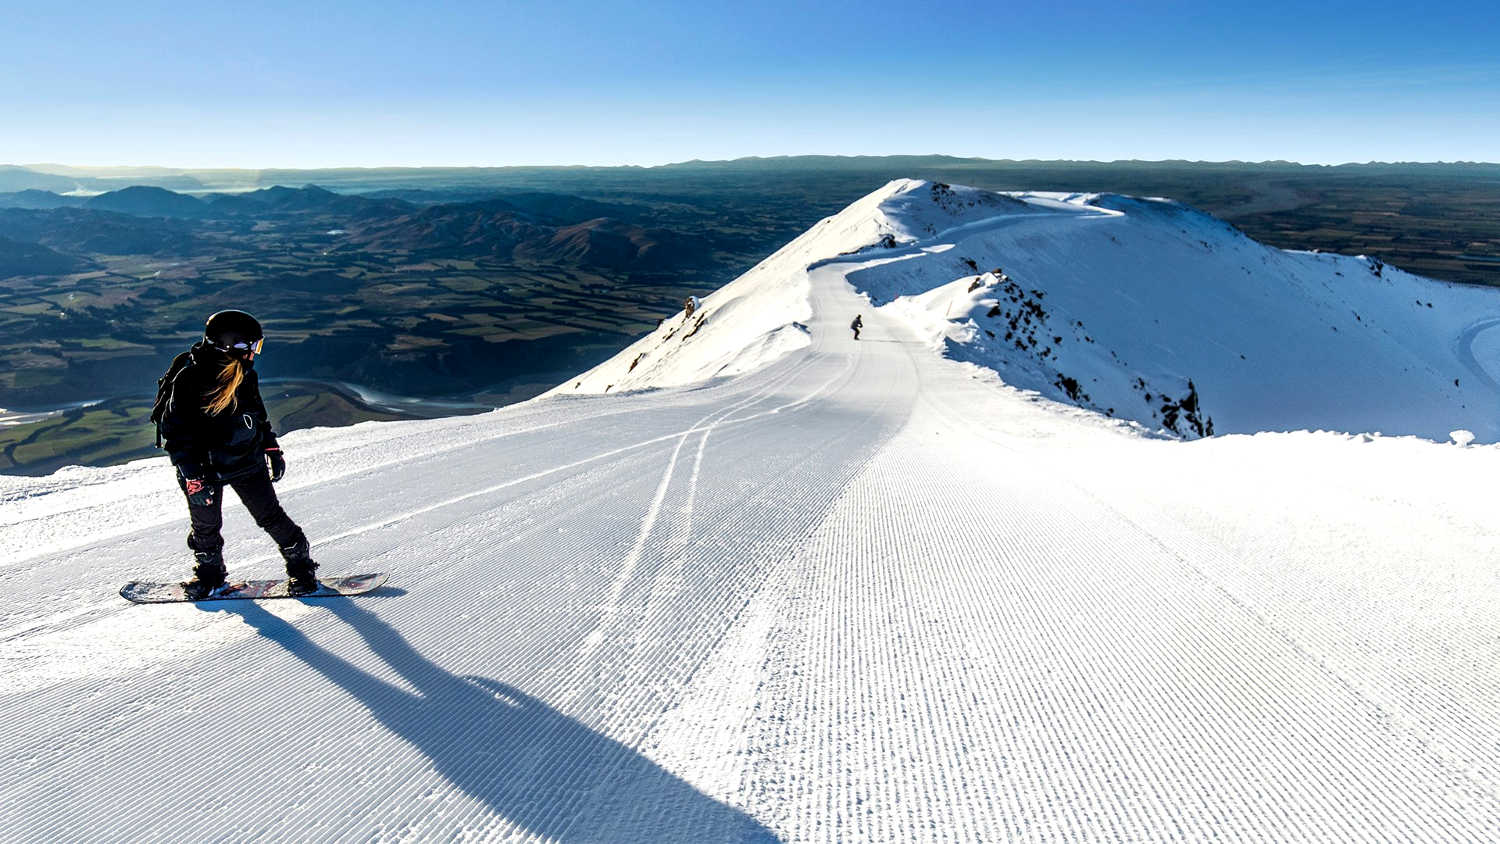 Winter sports skiing Mt Hutt, New Zealand @Mt Hutt